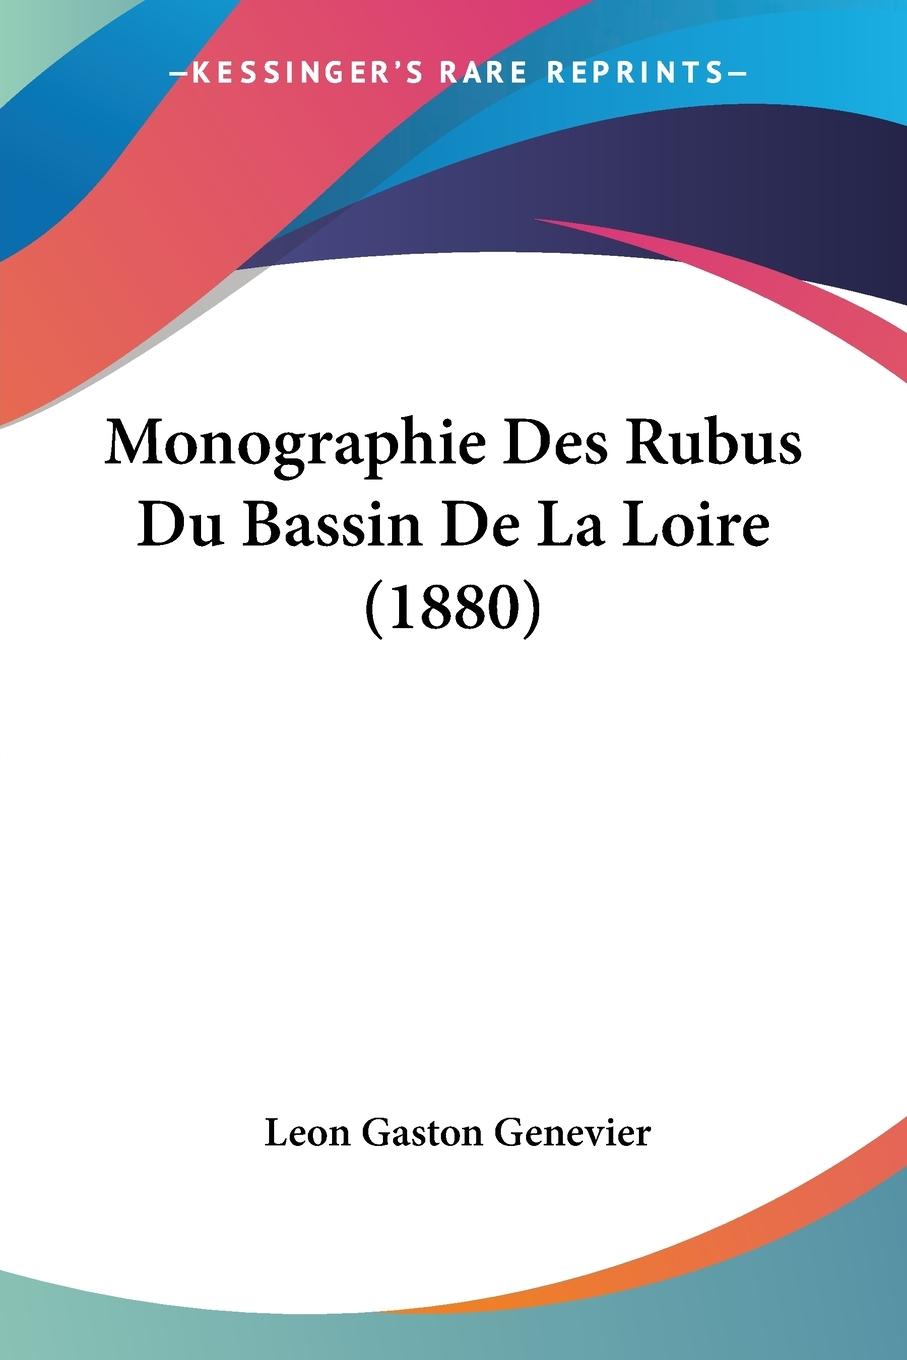 Monographie Des Rubus Du Bassin De La Loire (1880) - Genevier, Leon Gaston